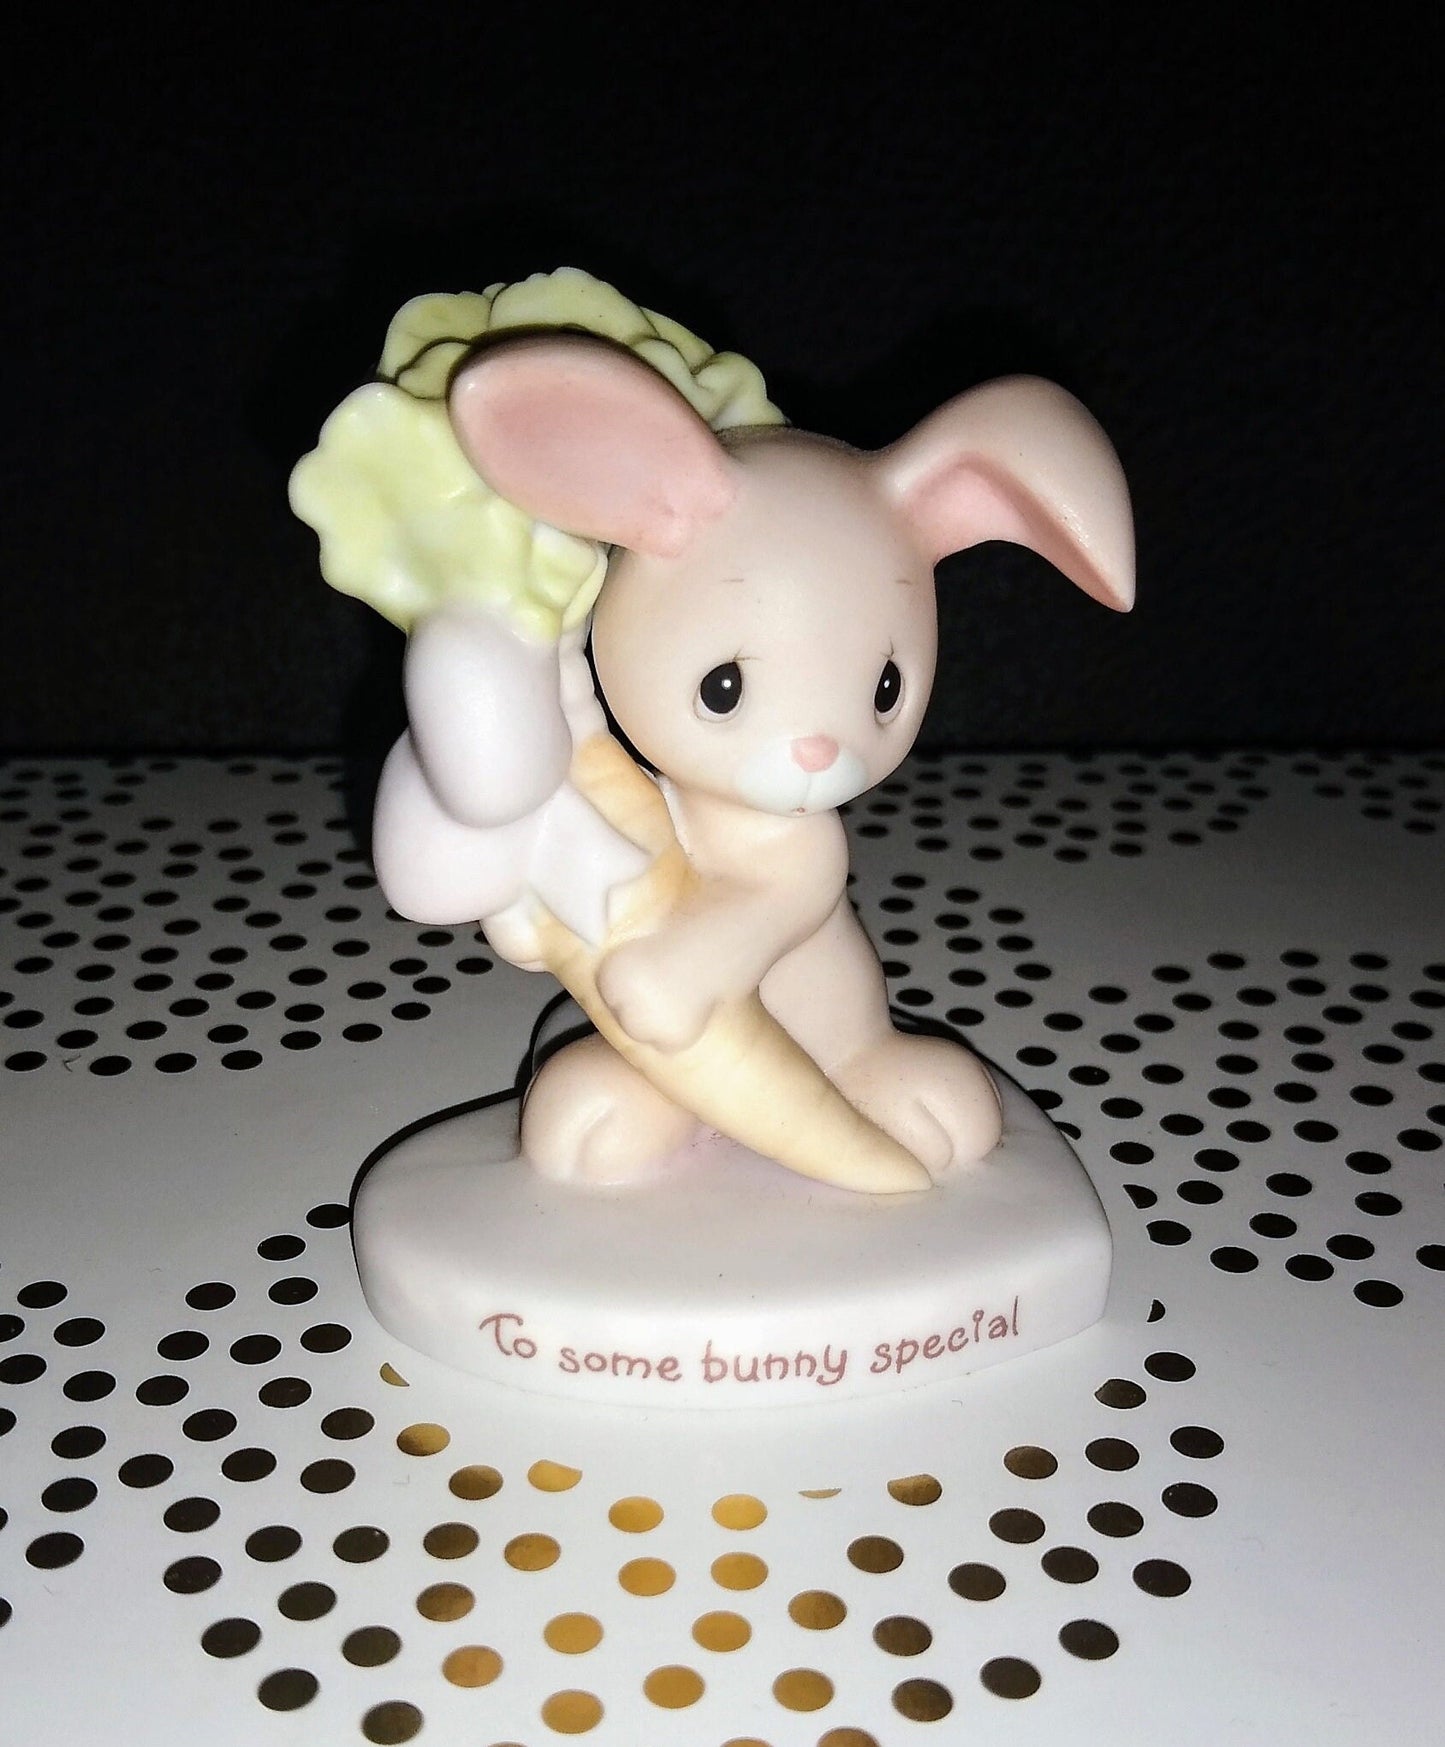 Precious Moments Enesco Vintage Bunny Figurine, To Some Bunny Special